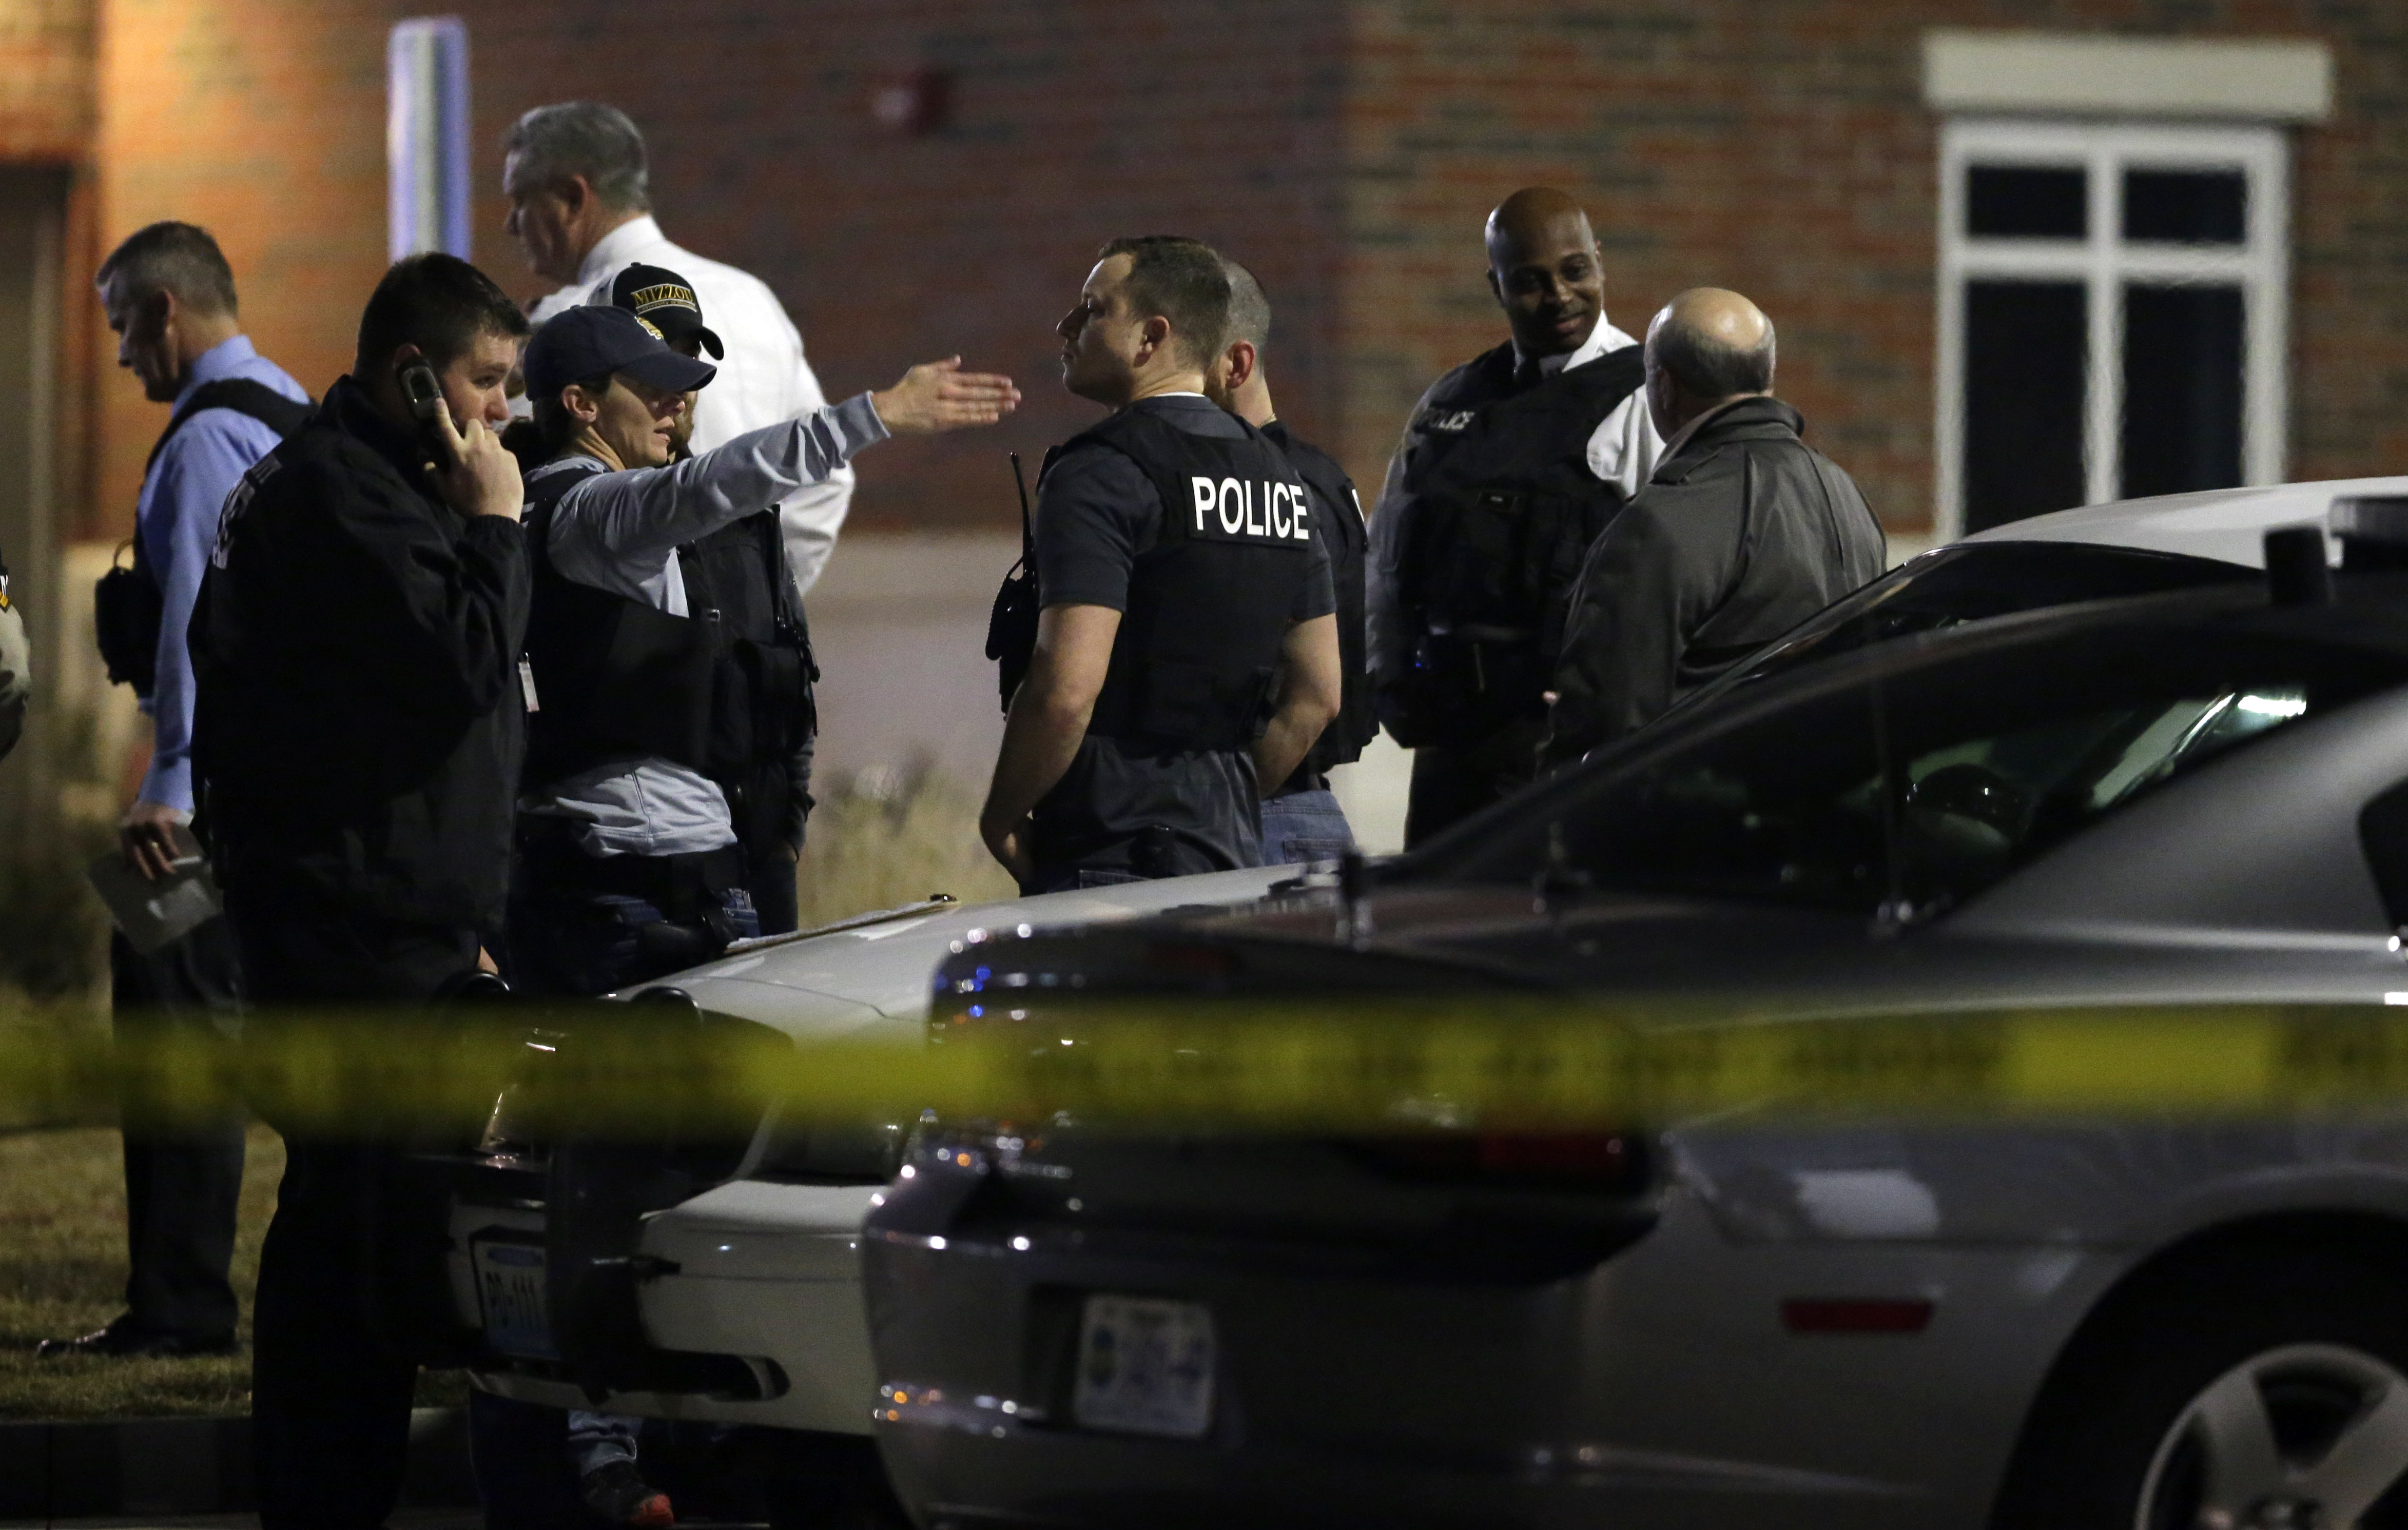 Etats-Unis: la police de Ferguson teste un pistolet de la deuxième chance